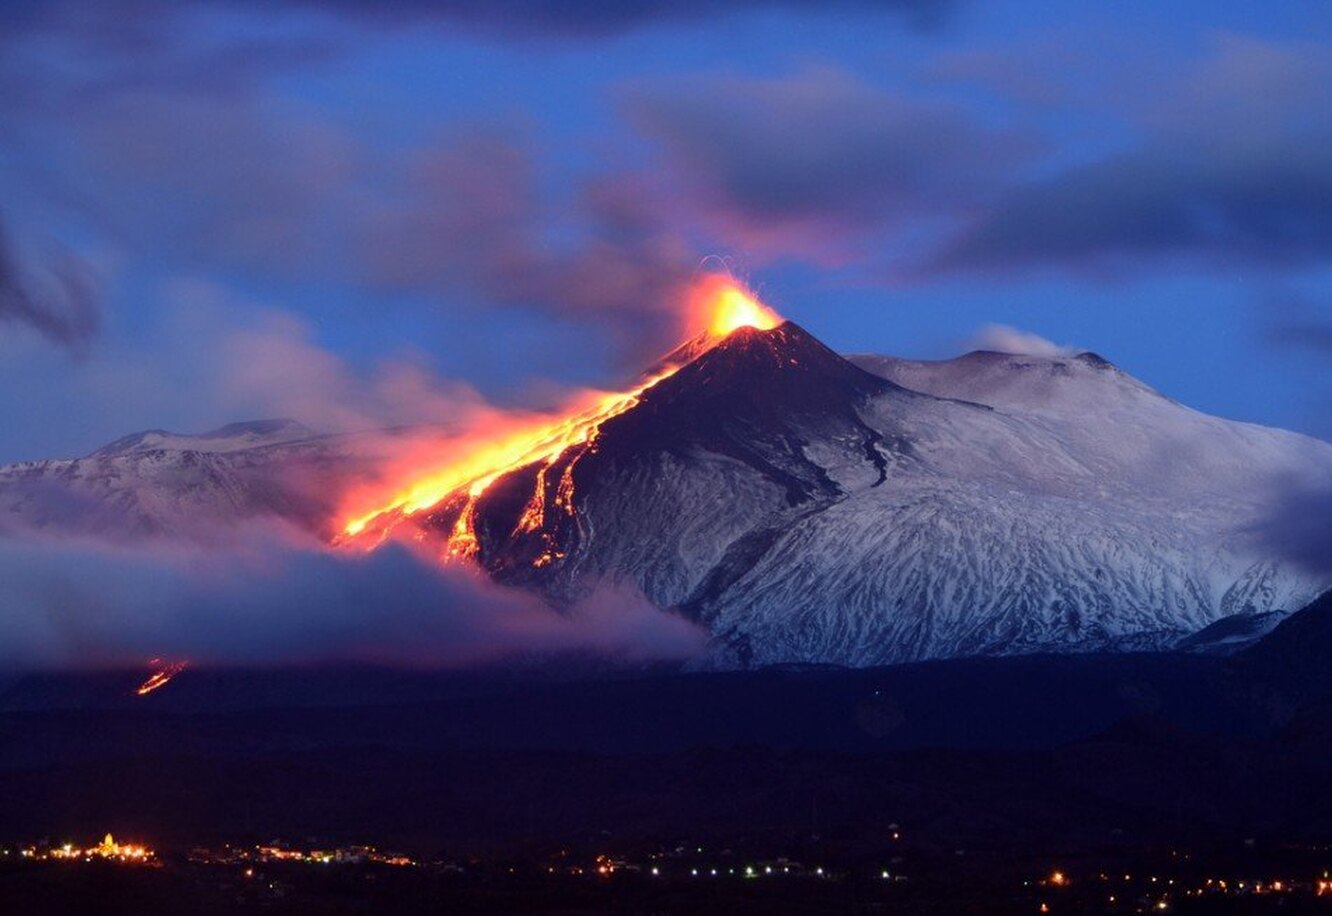 Действующий вулкан на сицилии. Вулкан Этна в Италии. Гора Этна Италия. Этна Сицилия извержение. Сицилия Италия вулкан Этна.